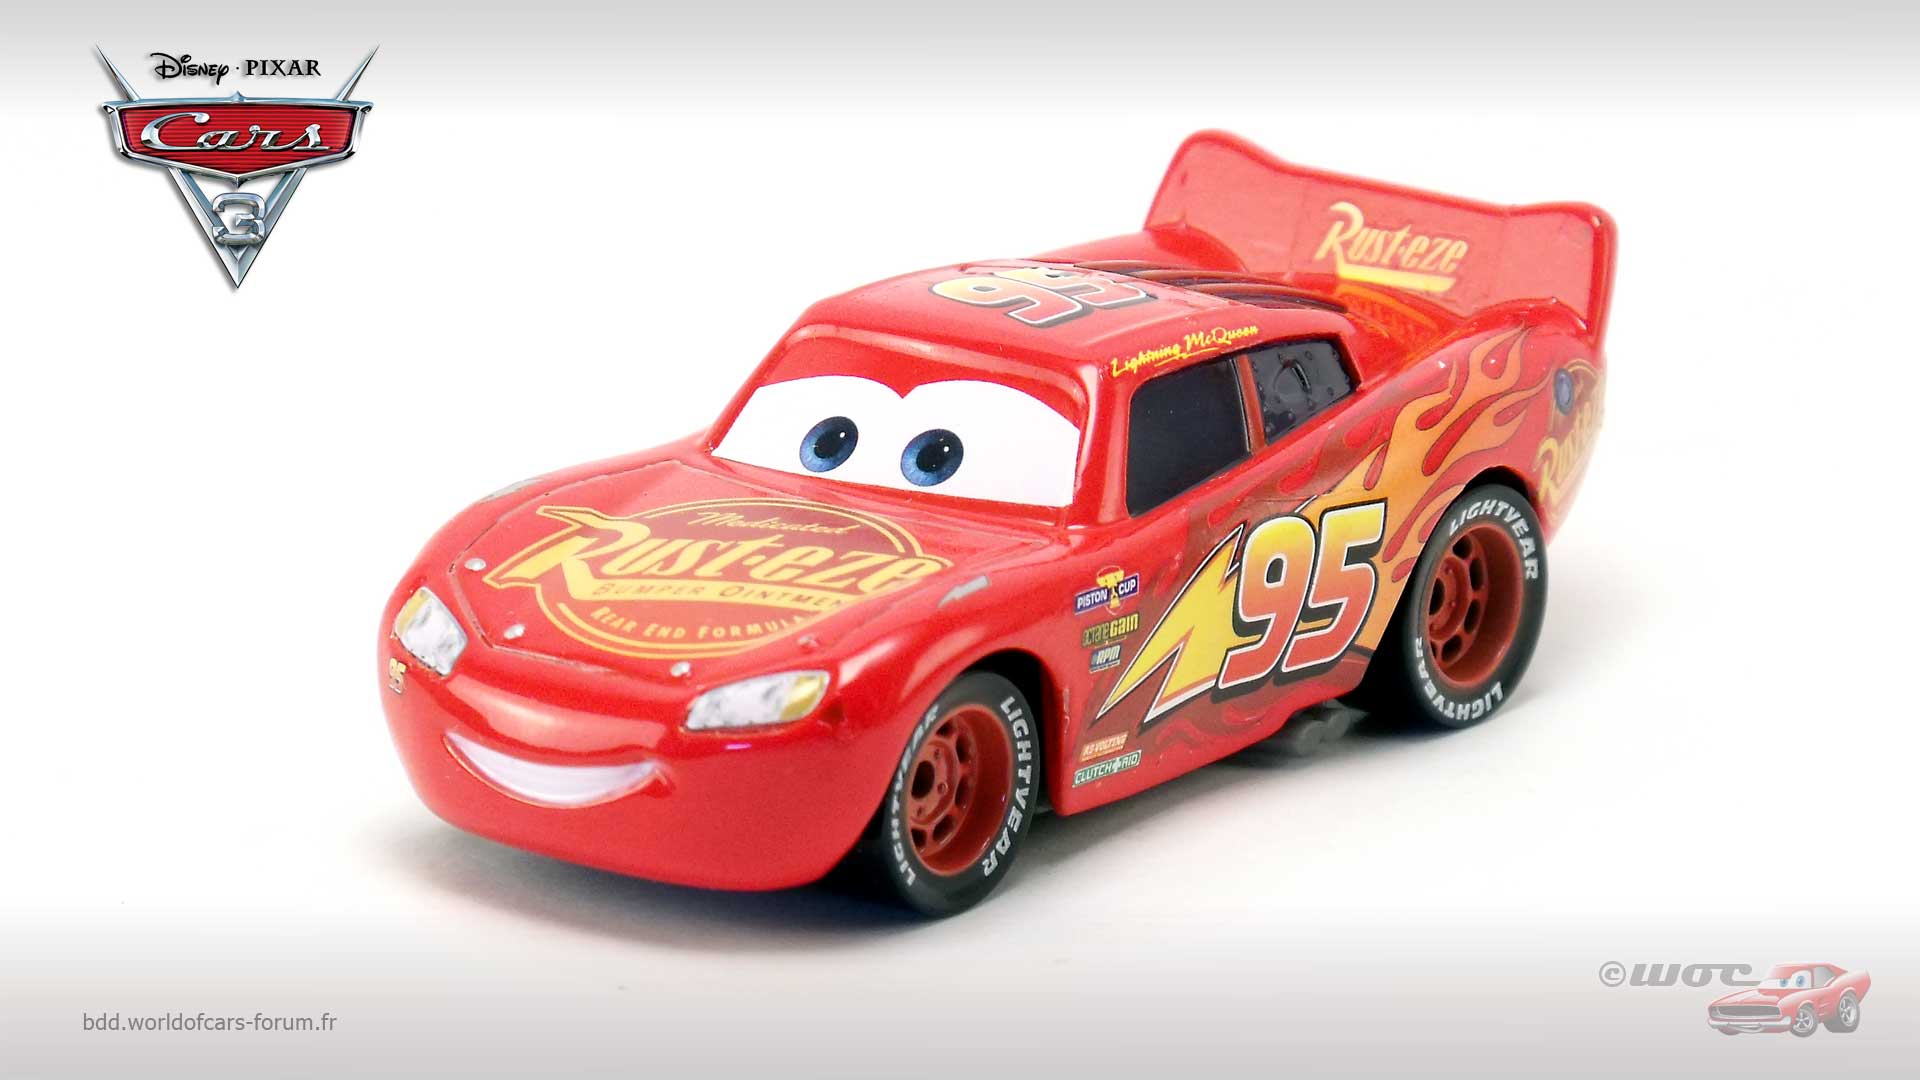 Cars 3 Lightning McQueen